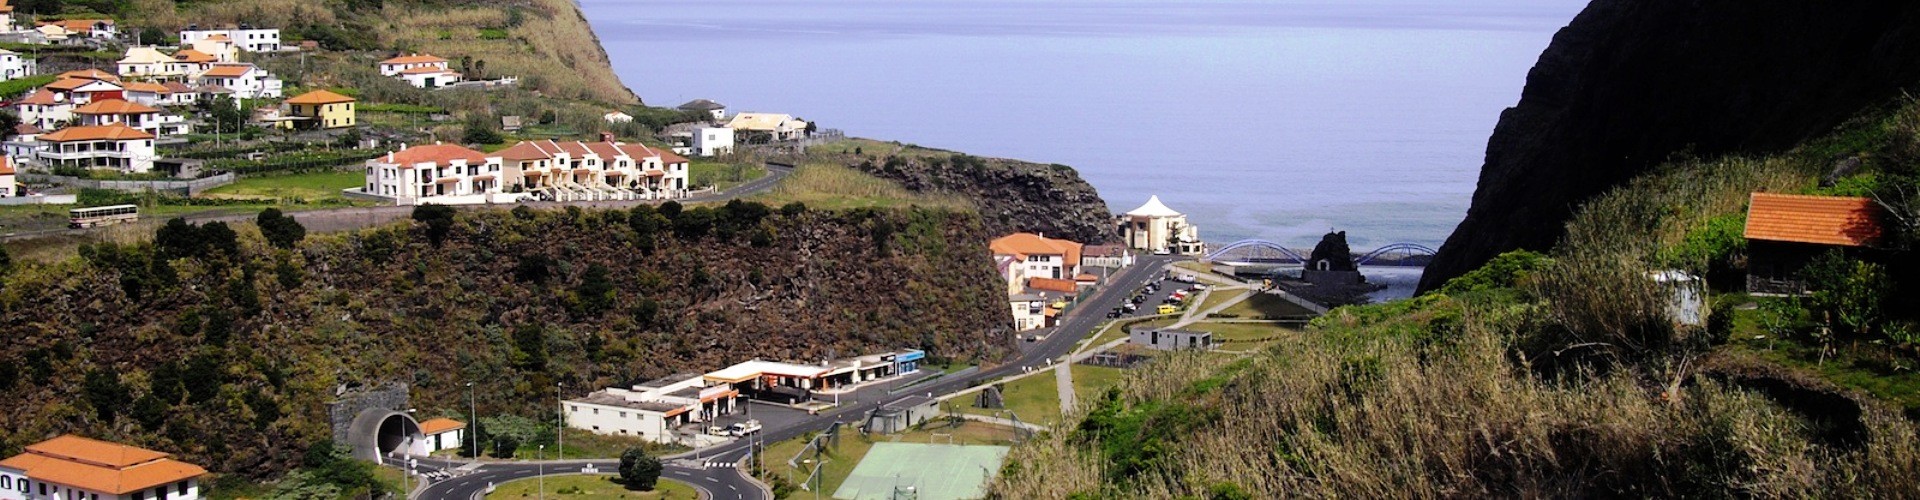 Miradouro dos Cardais Viewpoint, São Vicente, Madeira island